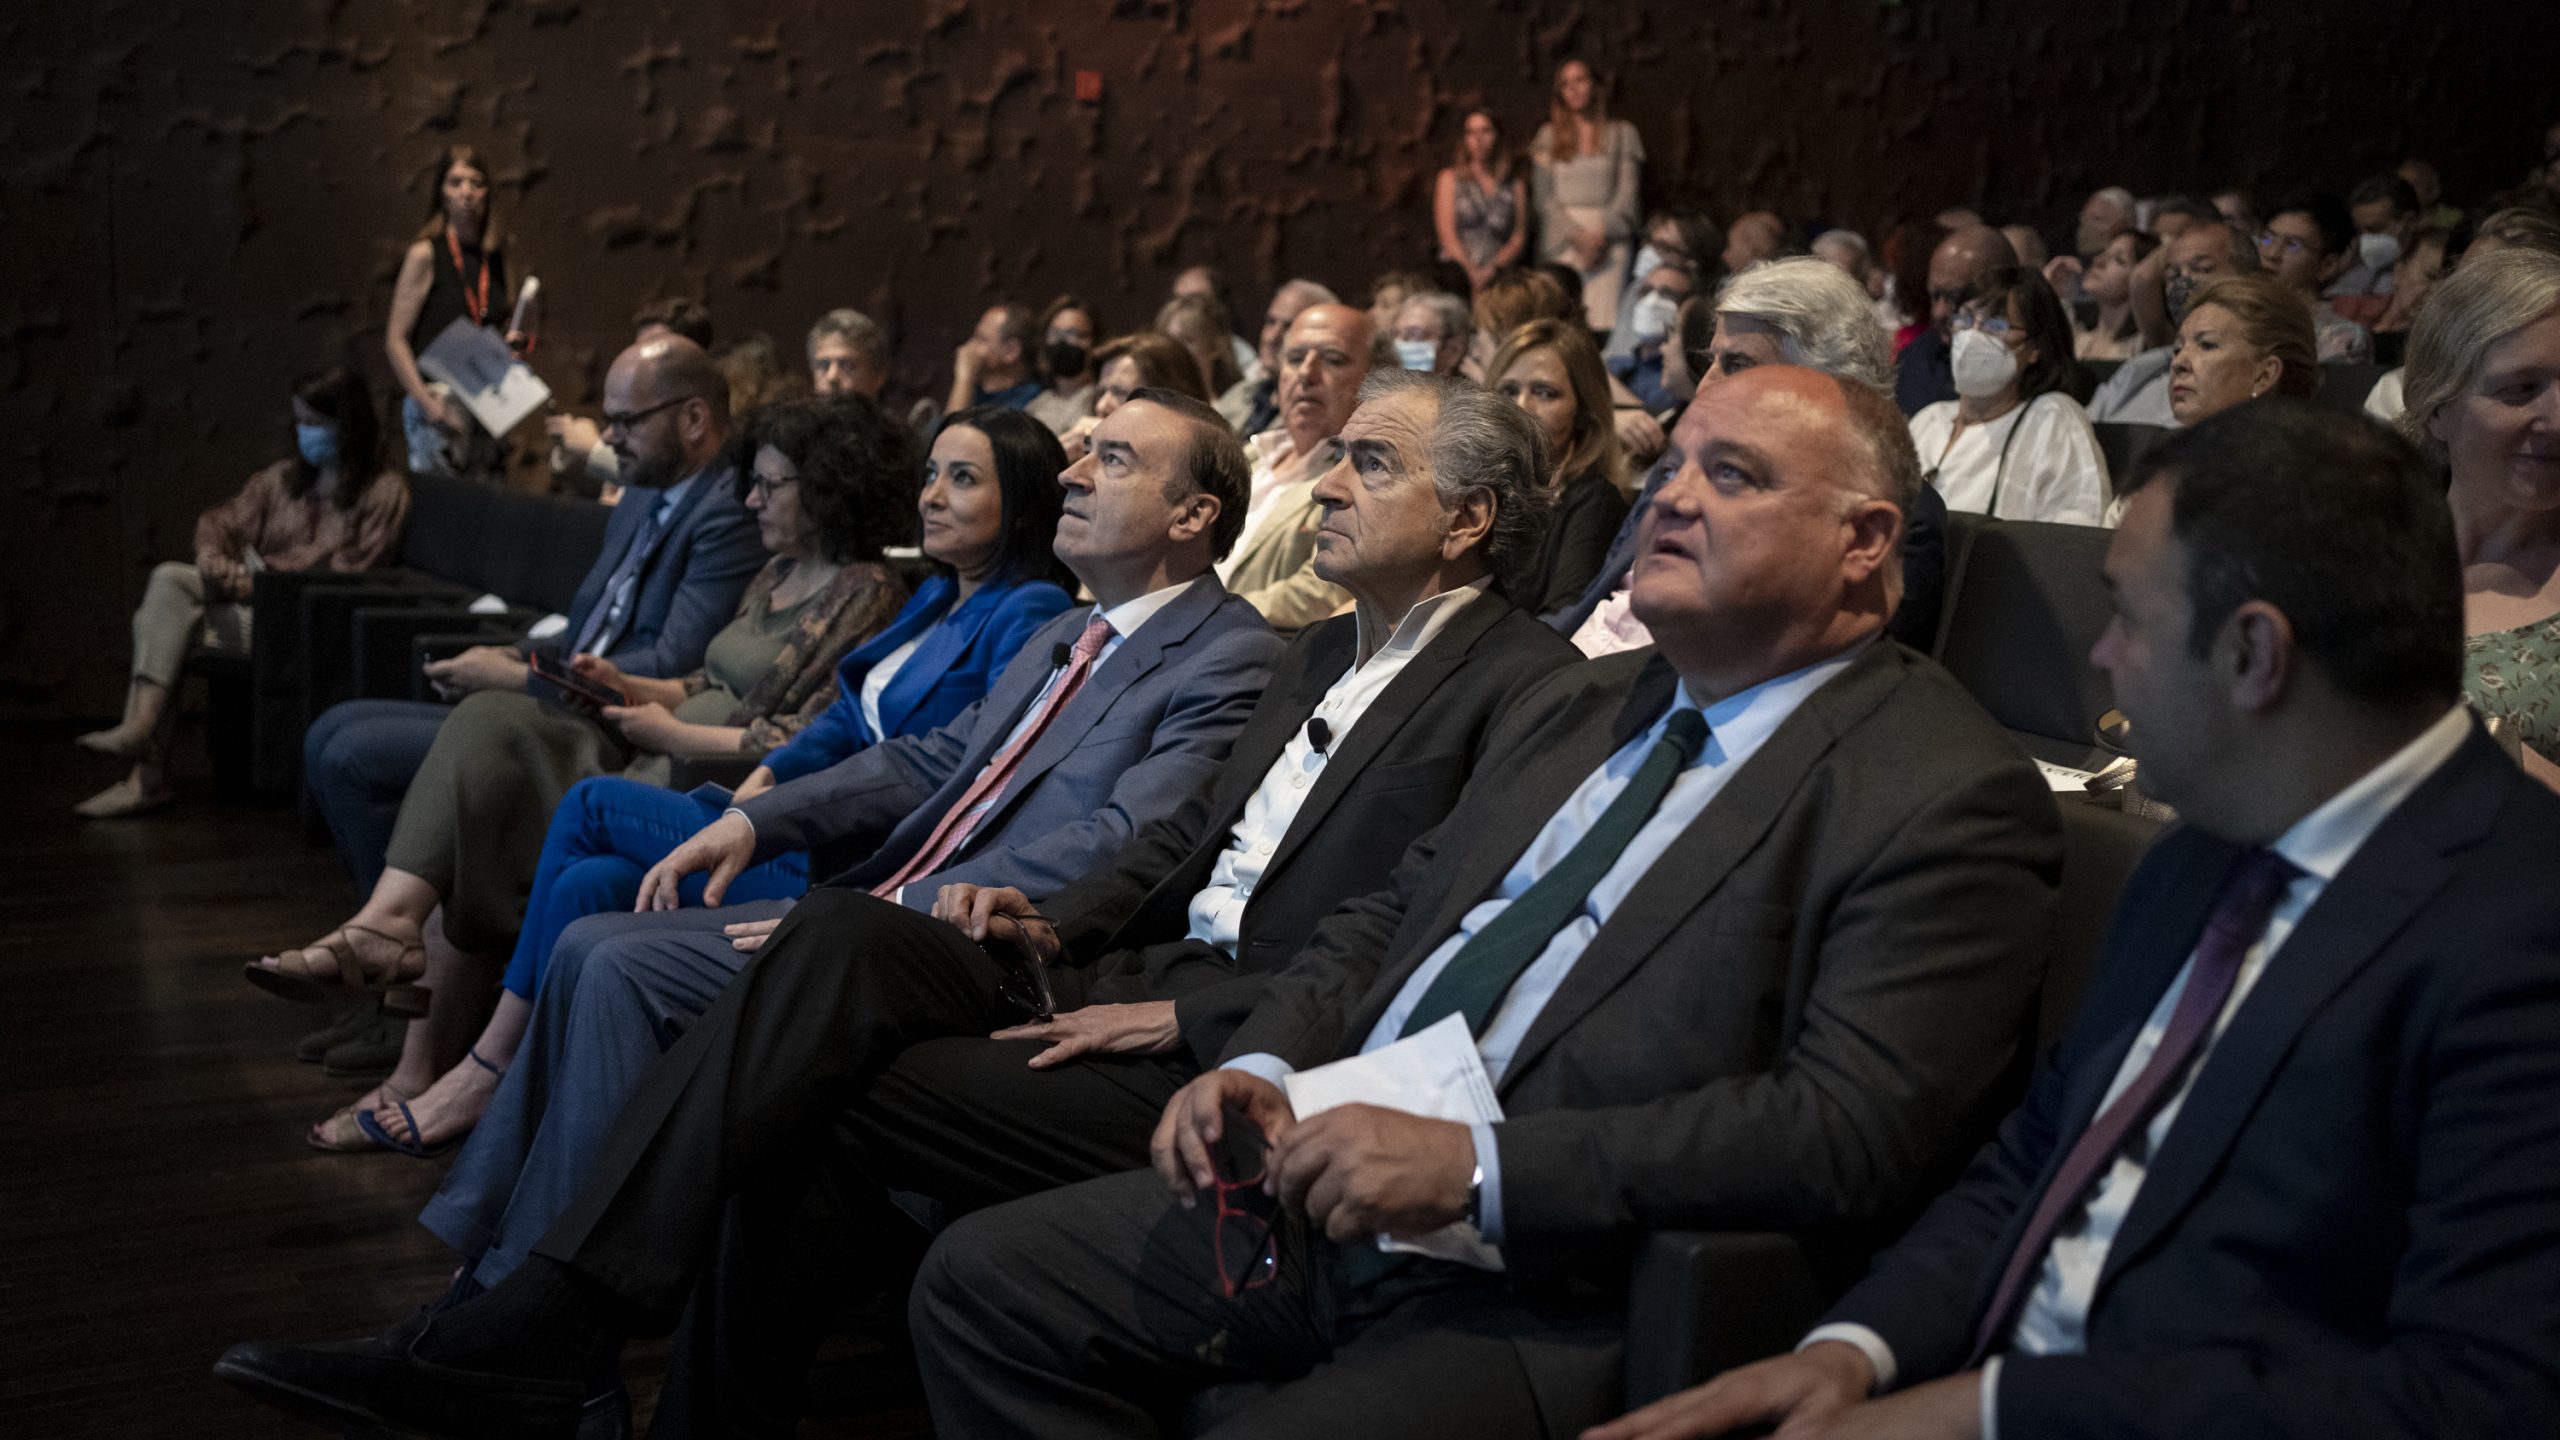 De gauche à droite : Cruz Sánchez de Lara, Pedro J. Ramírez, Bernard-Henri Lévy et Sergi Loughney, lors de la projection du film de BHL « Une autre idée du monde ».